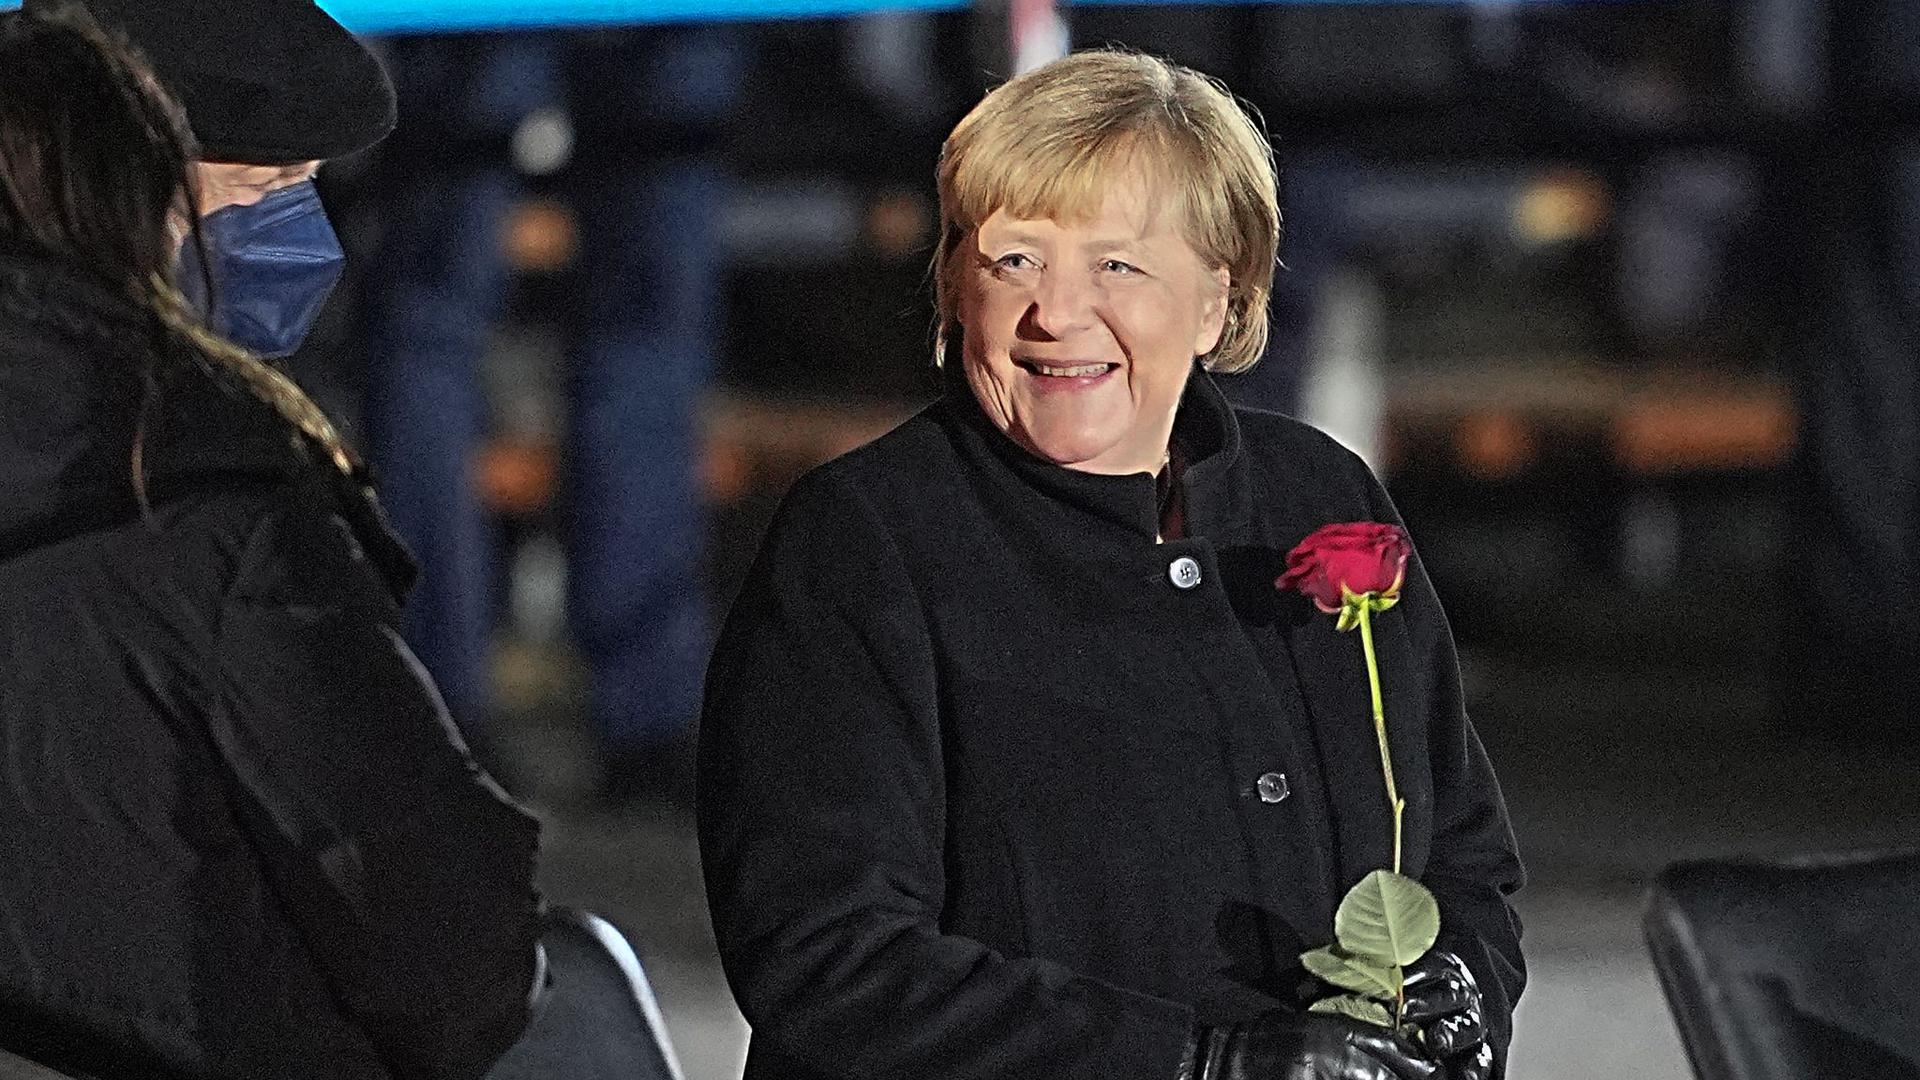 Abgang nach 16 Jahren: Angela Merkel tritt als Bundeskanzlerin ab. Ihre Amtszeit war von Krisen geprägt. 